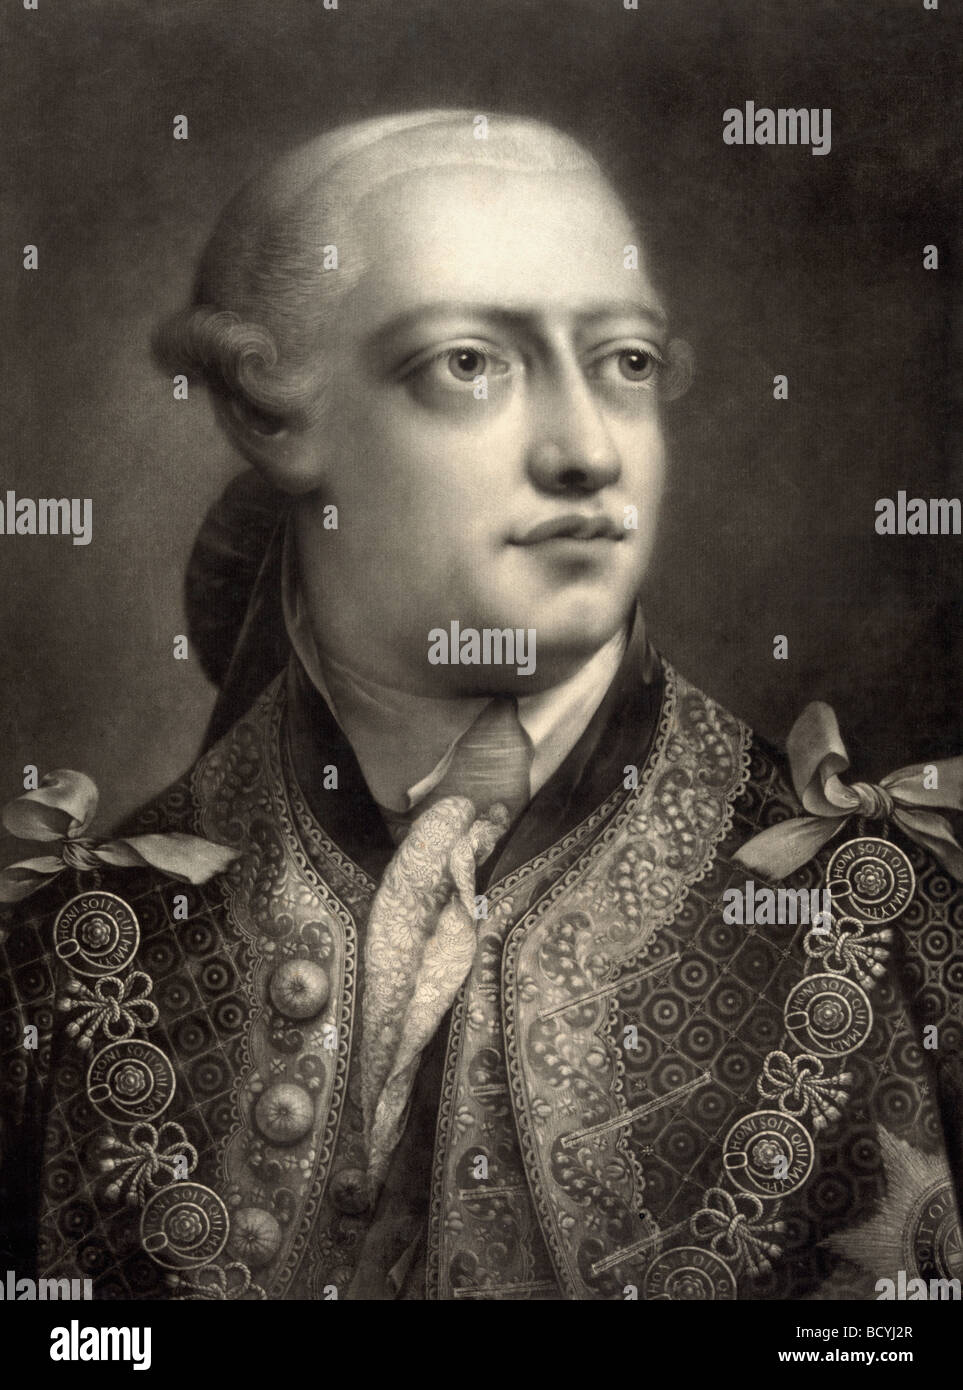 George III., 1738-1820. Georg Wilhelm Friedrich, König von Großbritannien, Irland und König von Hannover, 1815–1820. Stockfoto